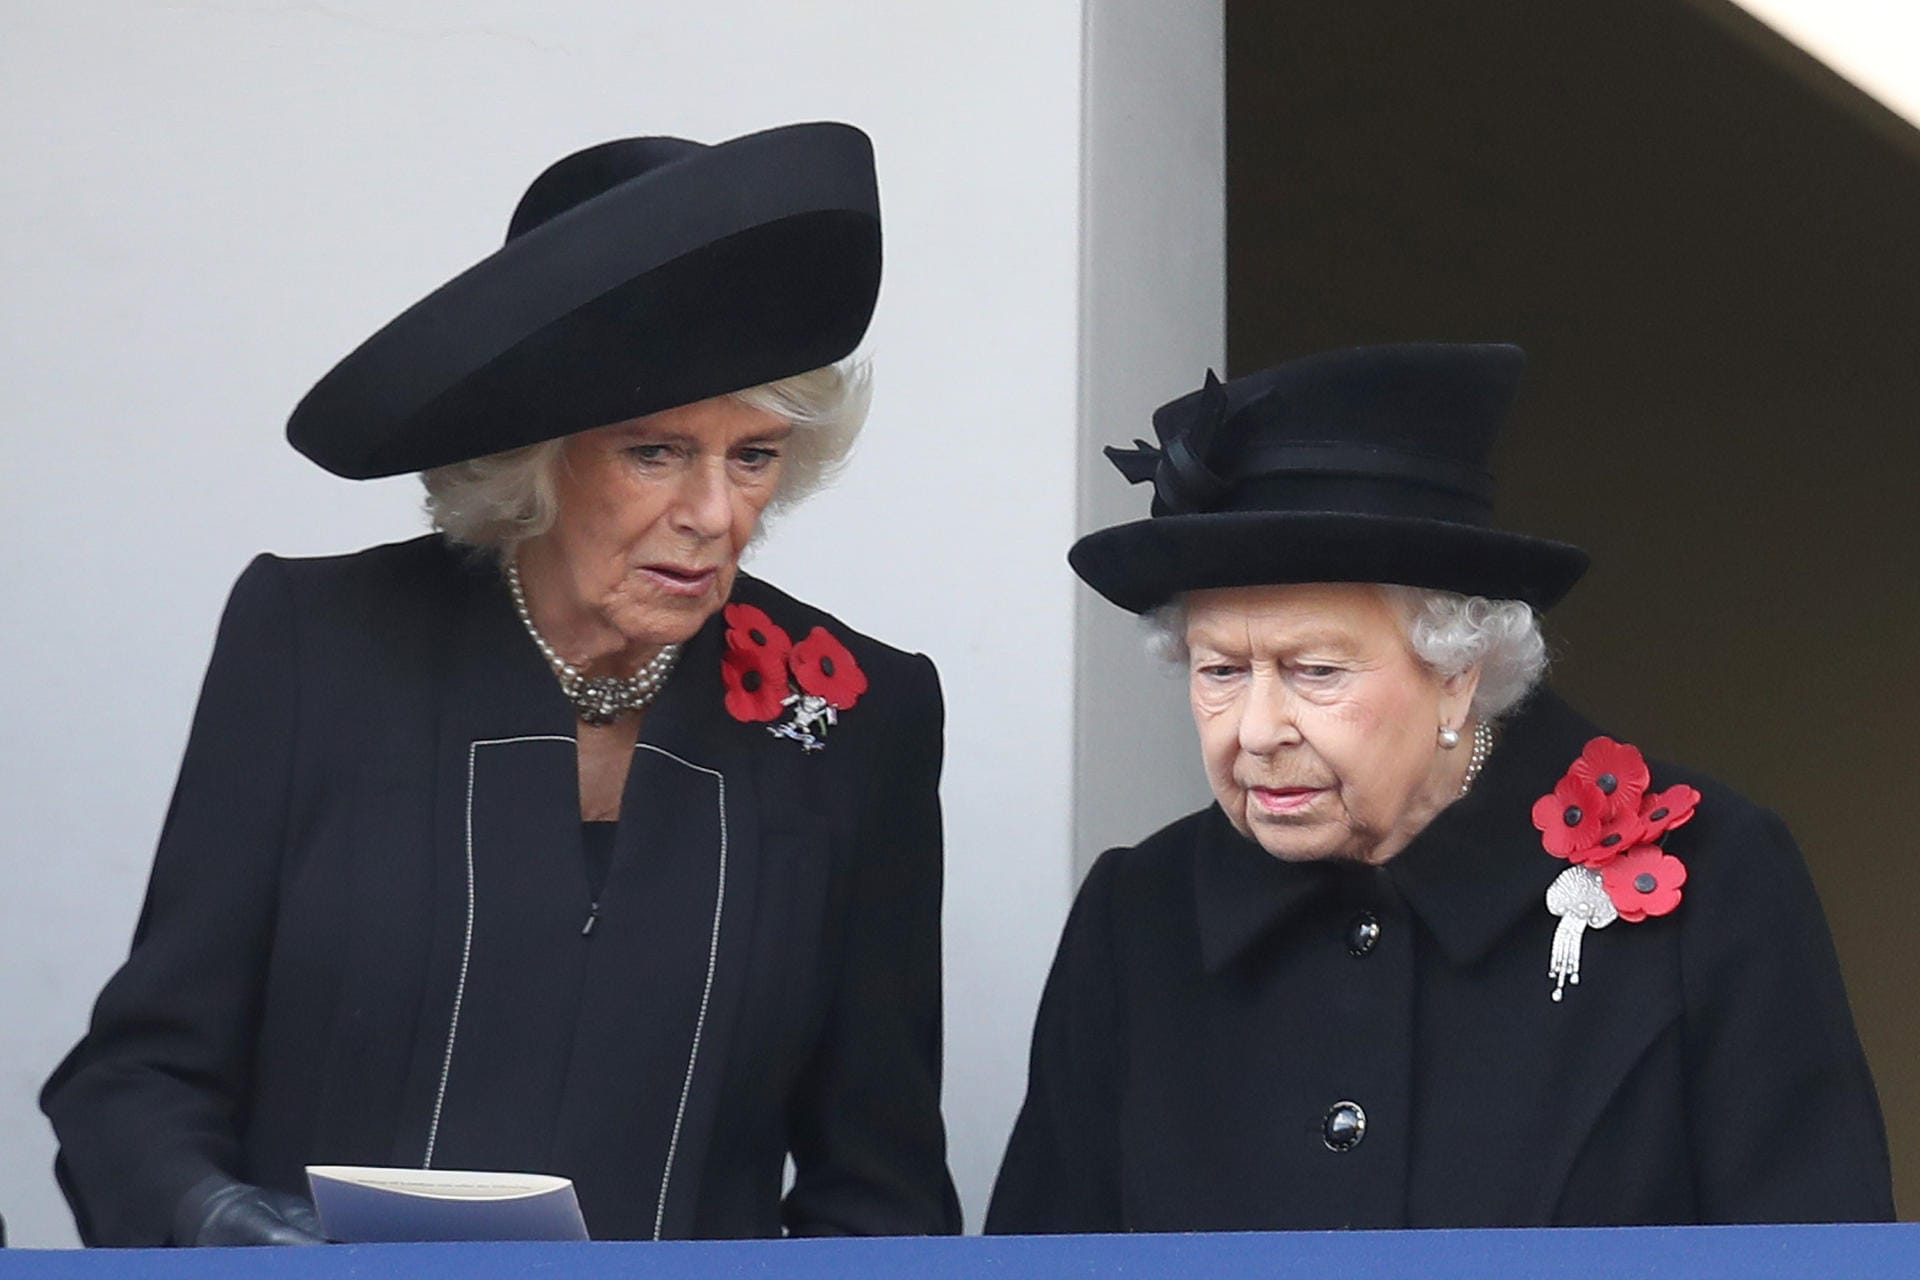 Plaudern statt schweigen: Herzogin Camilla versucht mit der Queen ins Gespräch zu kommen. Das gefällt den Royal-Fans nicht – denn der Moment ist denkbar unpassend gewählt.